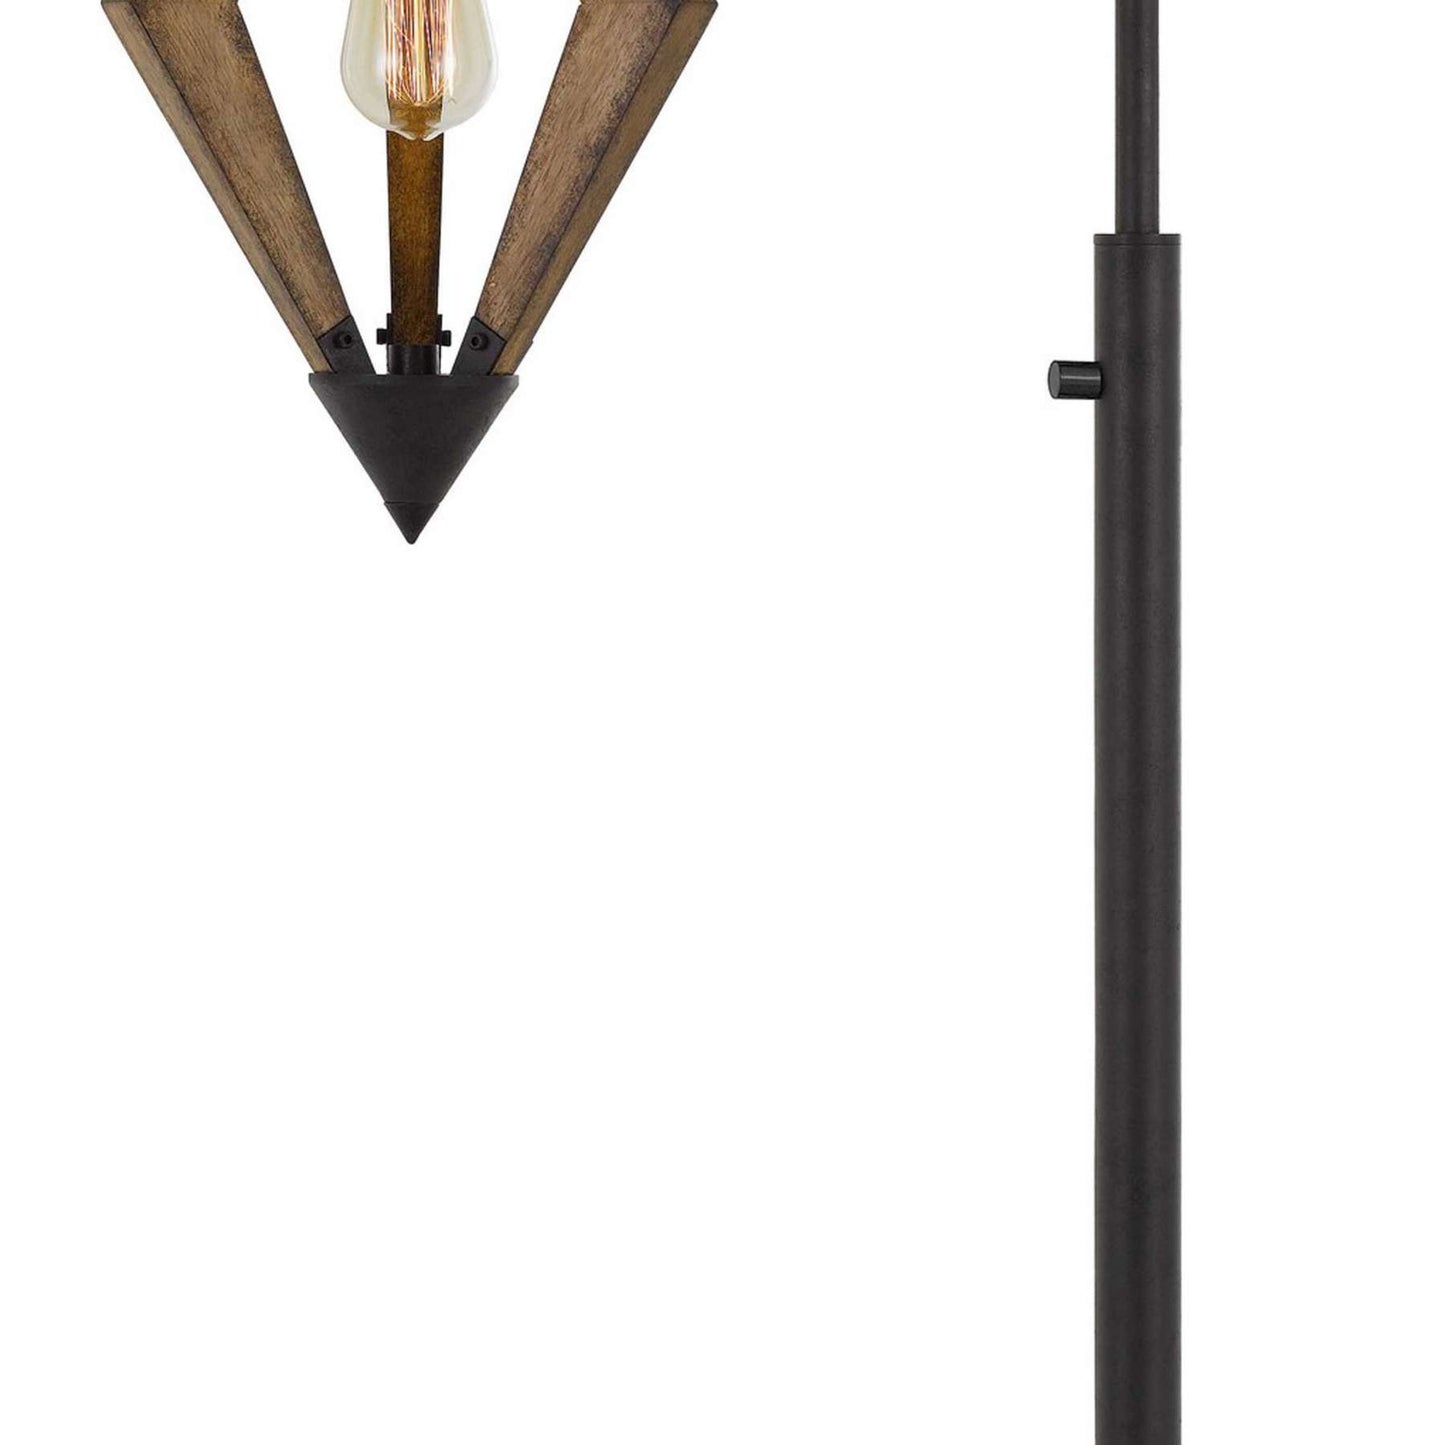 Tubular Metal Downbridge Floor Lamp With Wooden Accents, Black By Benzara | Floor Lamps |  Modishstore  - 4